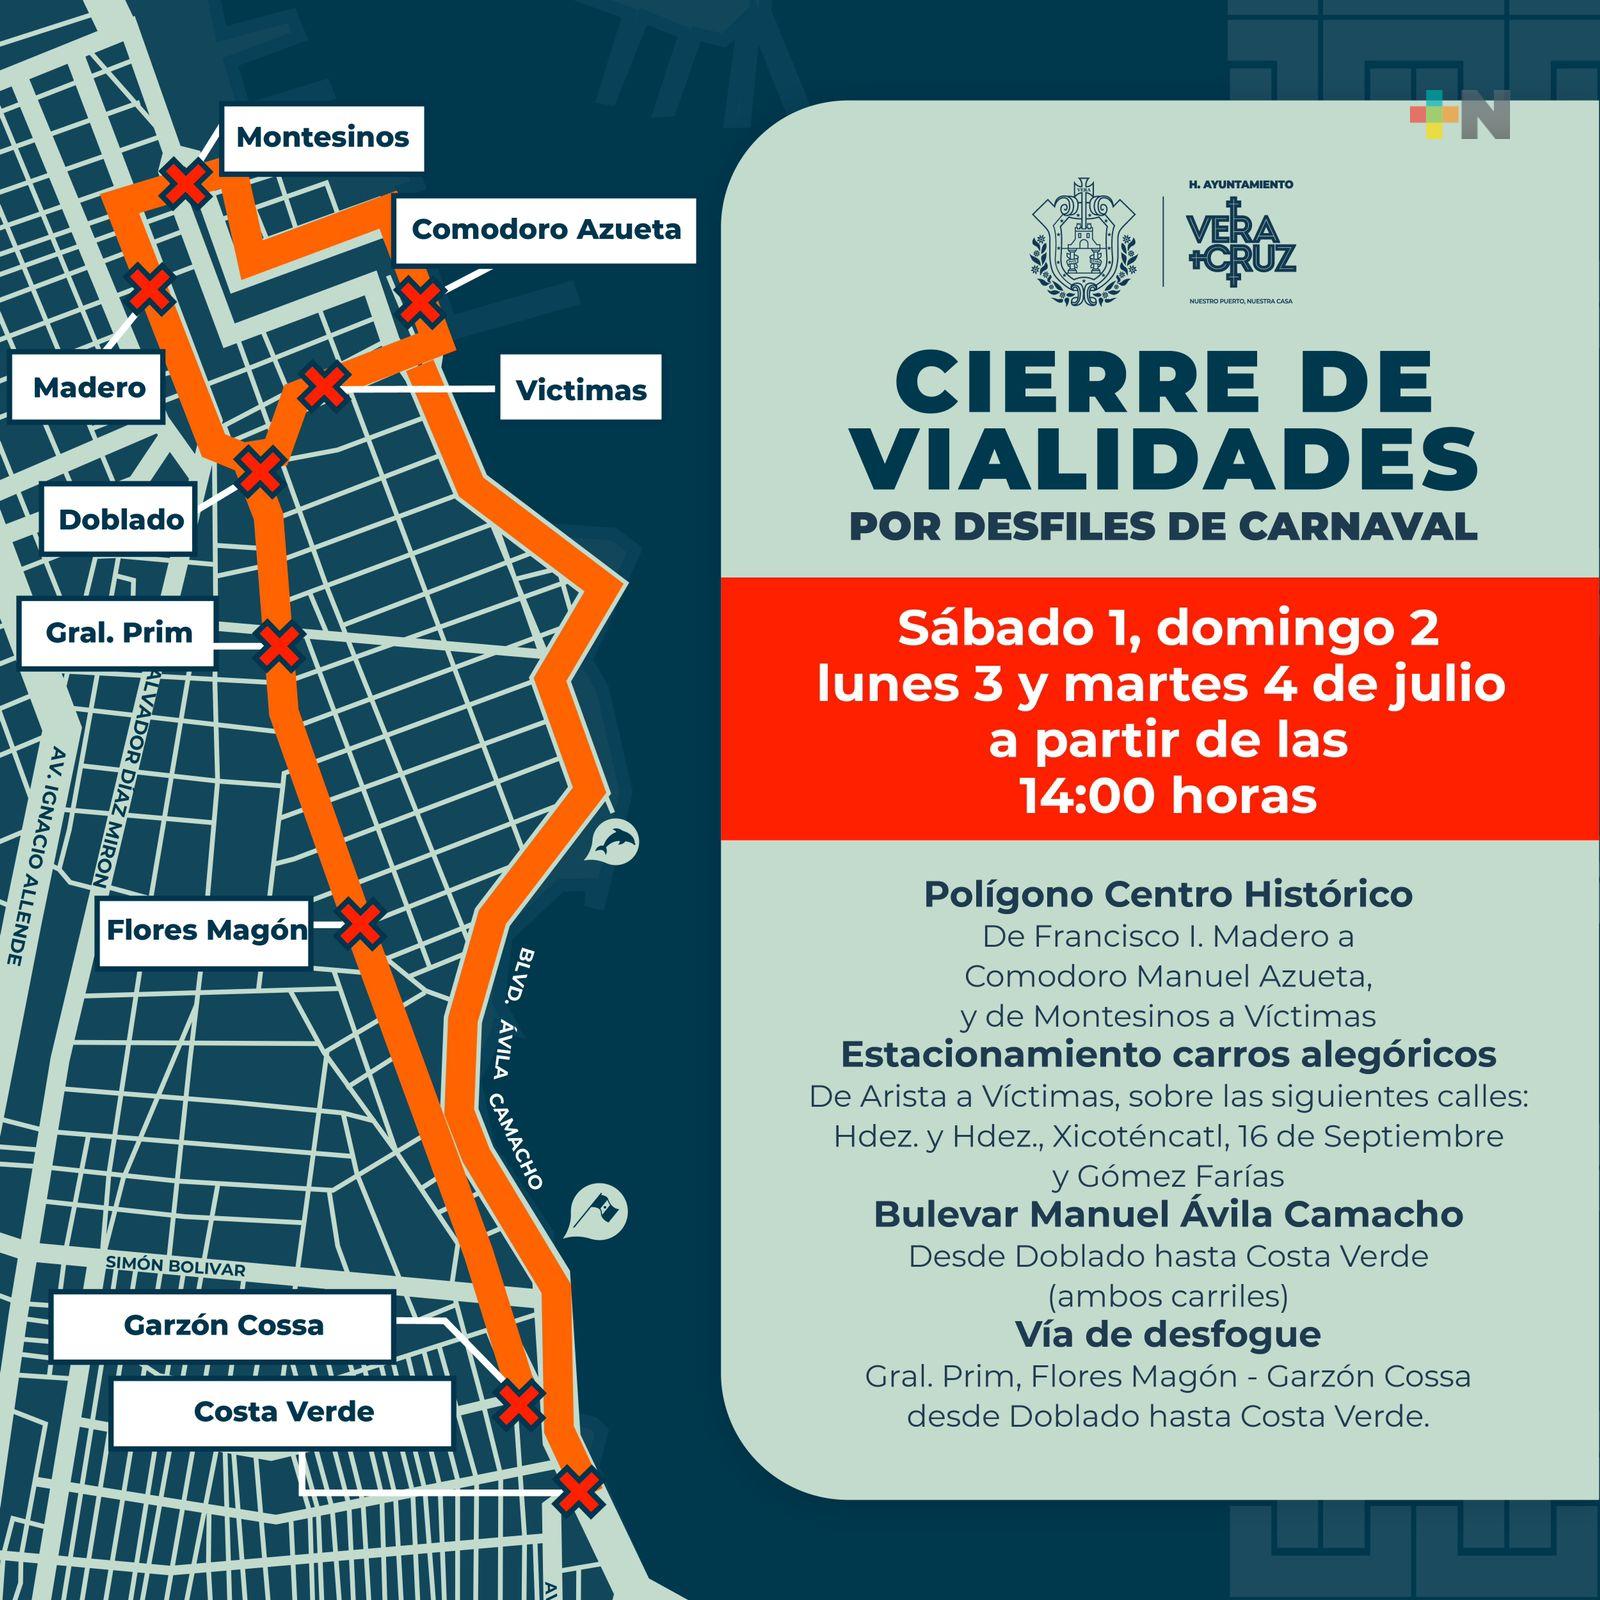 Cierran vialidades por desfiles del carnaval de Veracruz